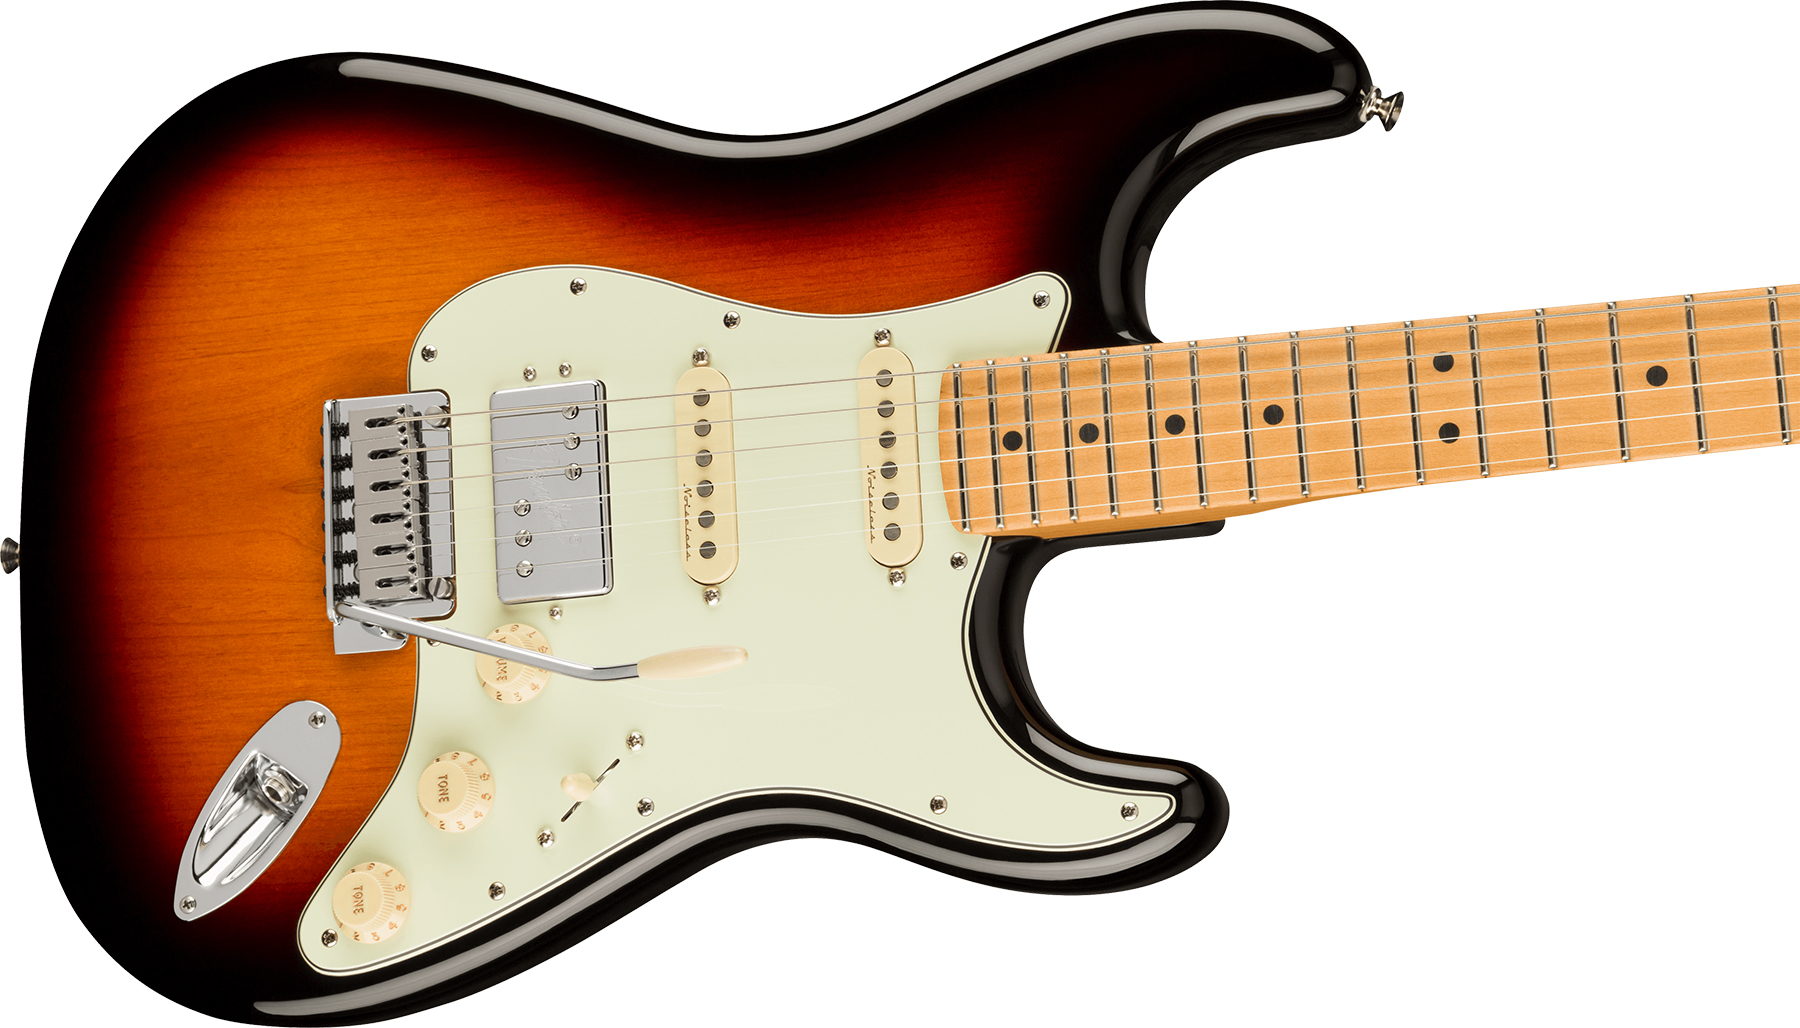 Fender Strat Player Plus Mex Hss Trem Mn - 3-color Sunburst - E-Gitarre in Str-Form - Variation 2